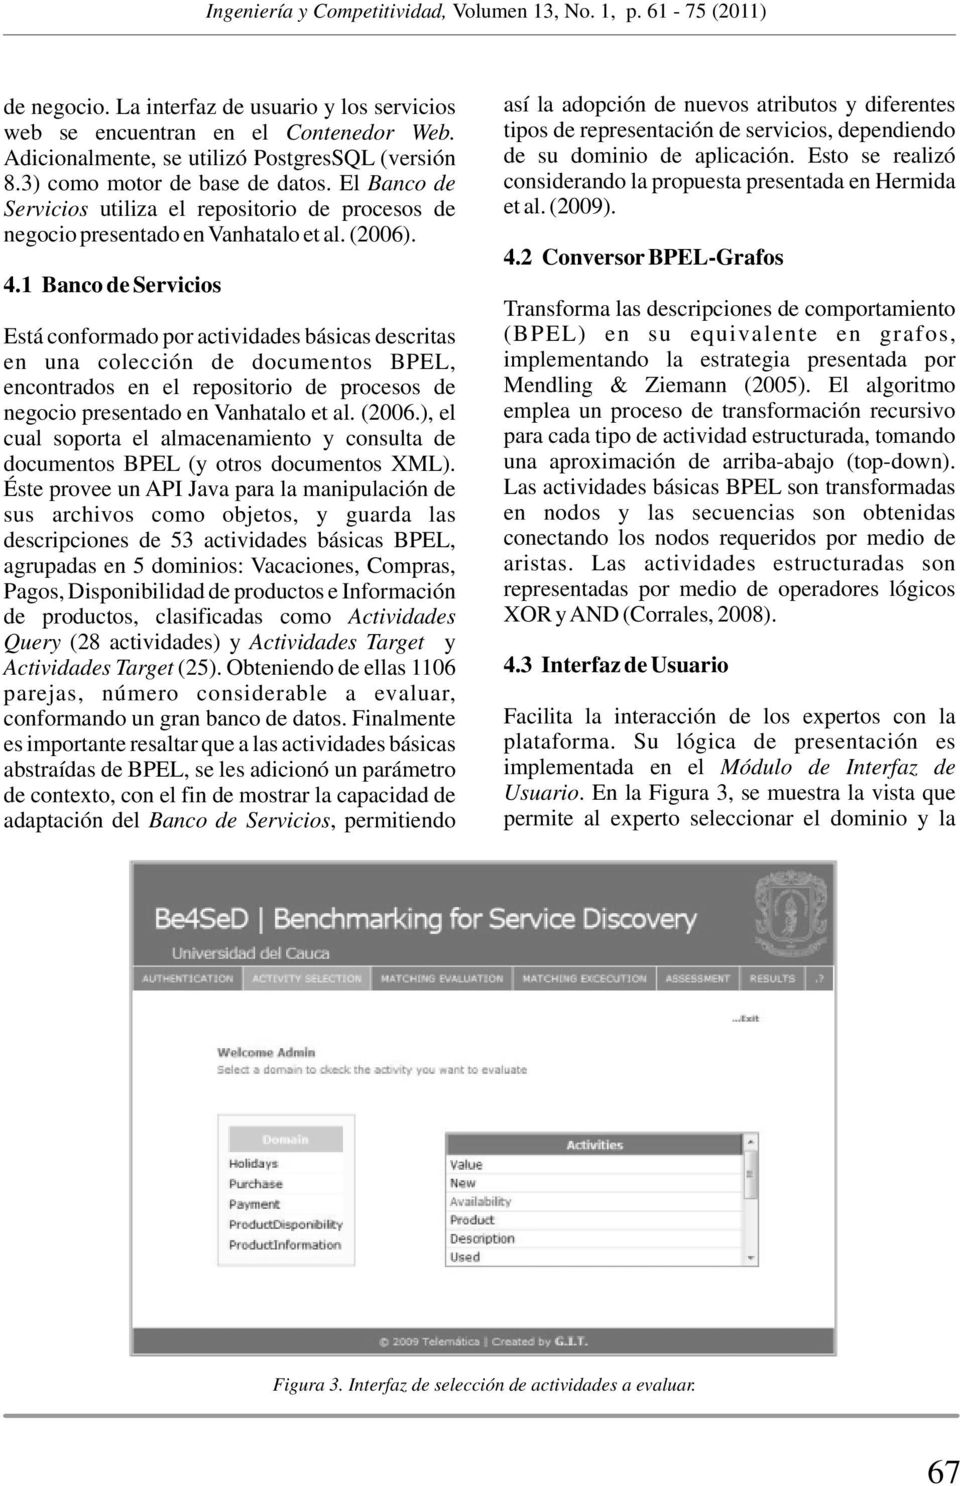 1 Banco de Servicios Está conformado por actividades básicas descritas en una colección de documentos BPEL, encontrados en el repositorio de procesos de negocio presentado en Vanhatalo et al. (2006.